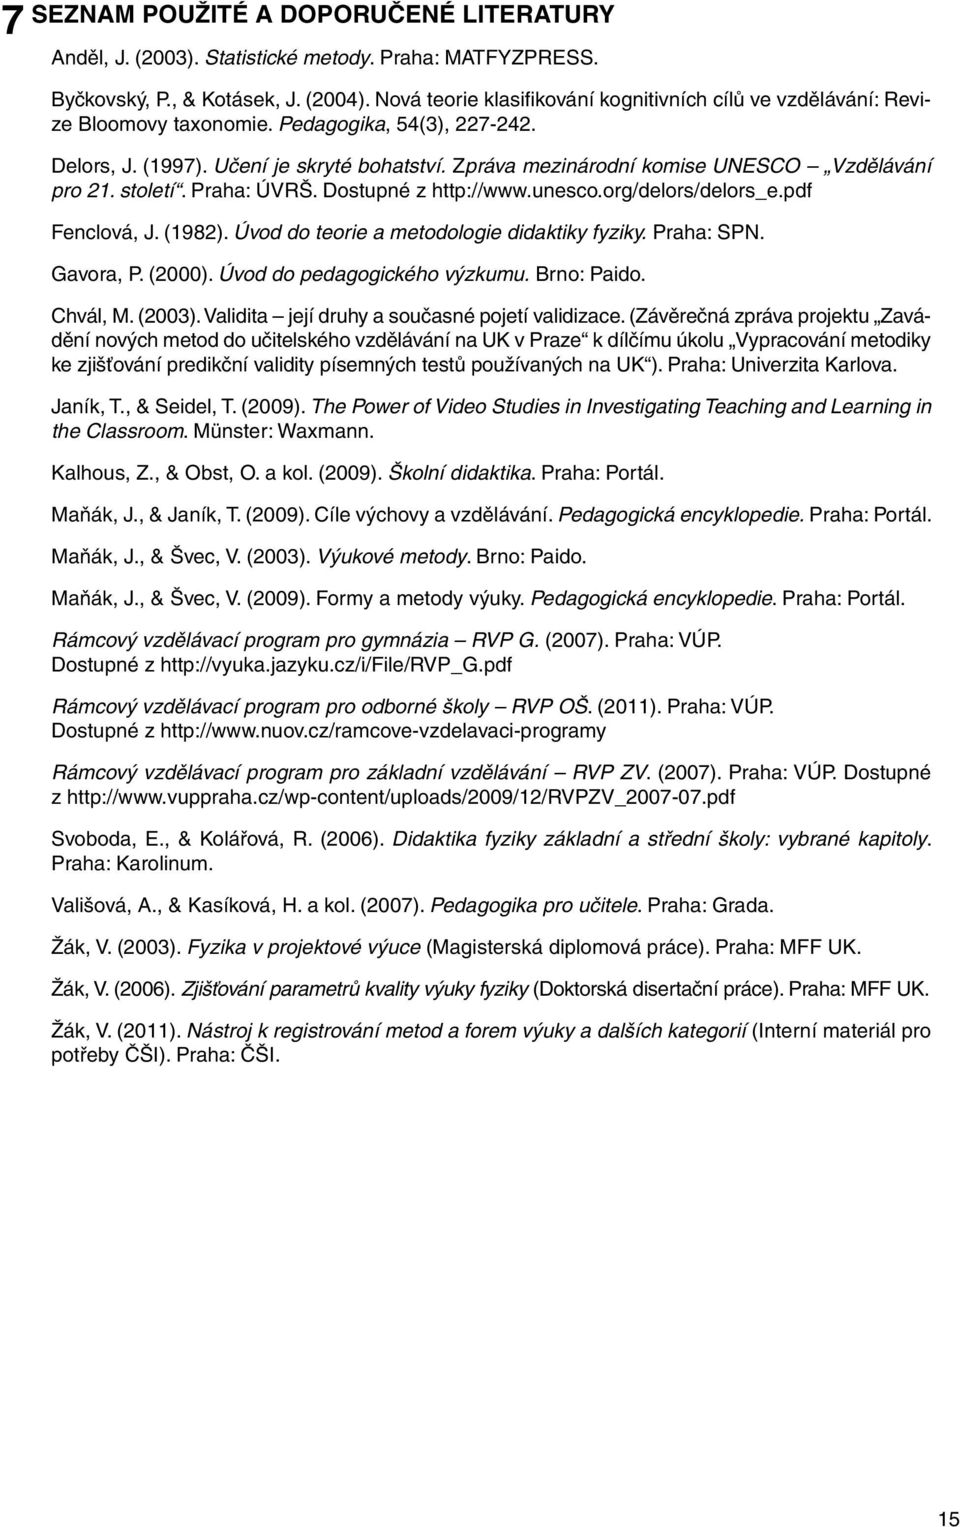 Zpráva mezinárodní komise UNESCO Vzdělávání pro 21. století. Praha: ÚVRŠ. Dostupné z http://www.unesco.org/delors/delors_e.pdf Fenclová, J. (1982). Úvod do teorie a metodologie didaktiky fyziky.